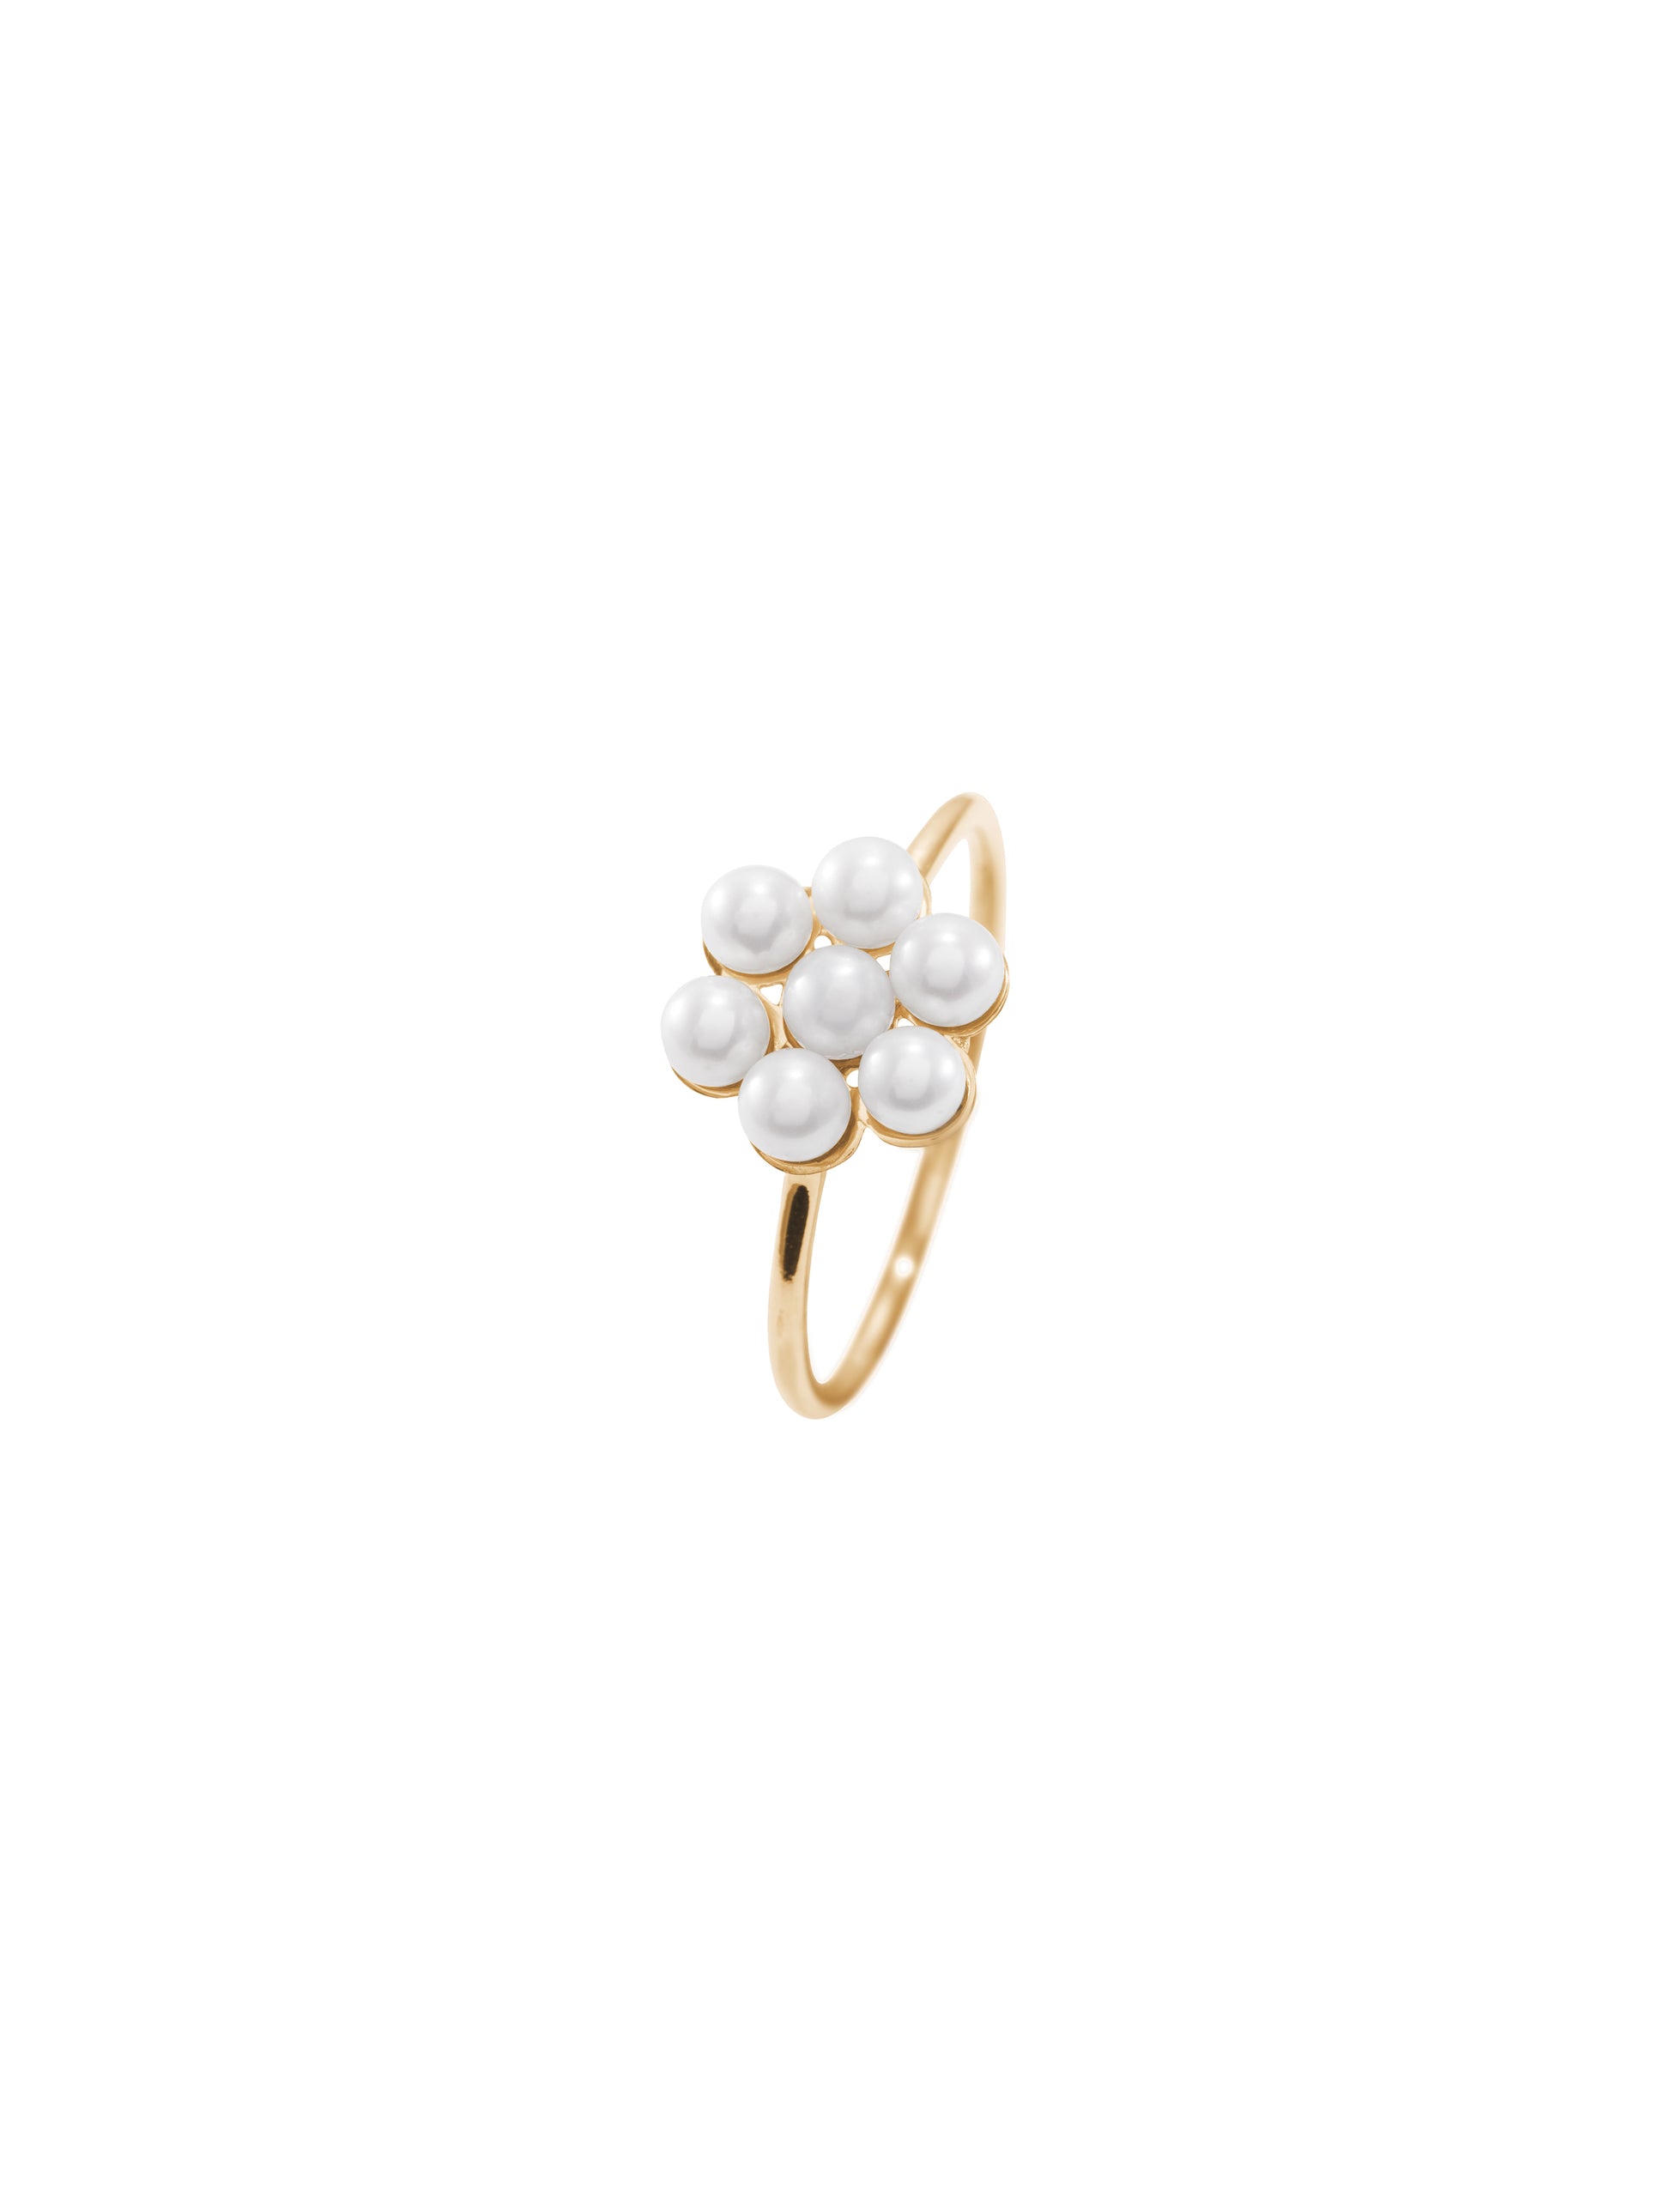 Pearl Bloom Ring